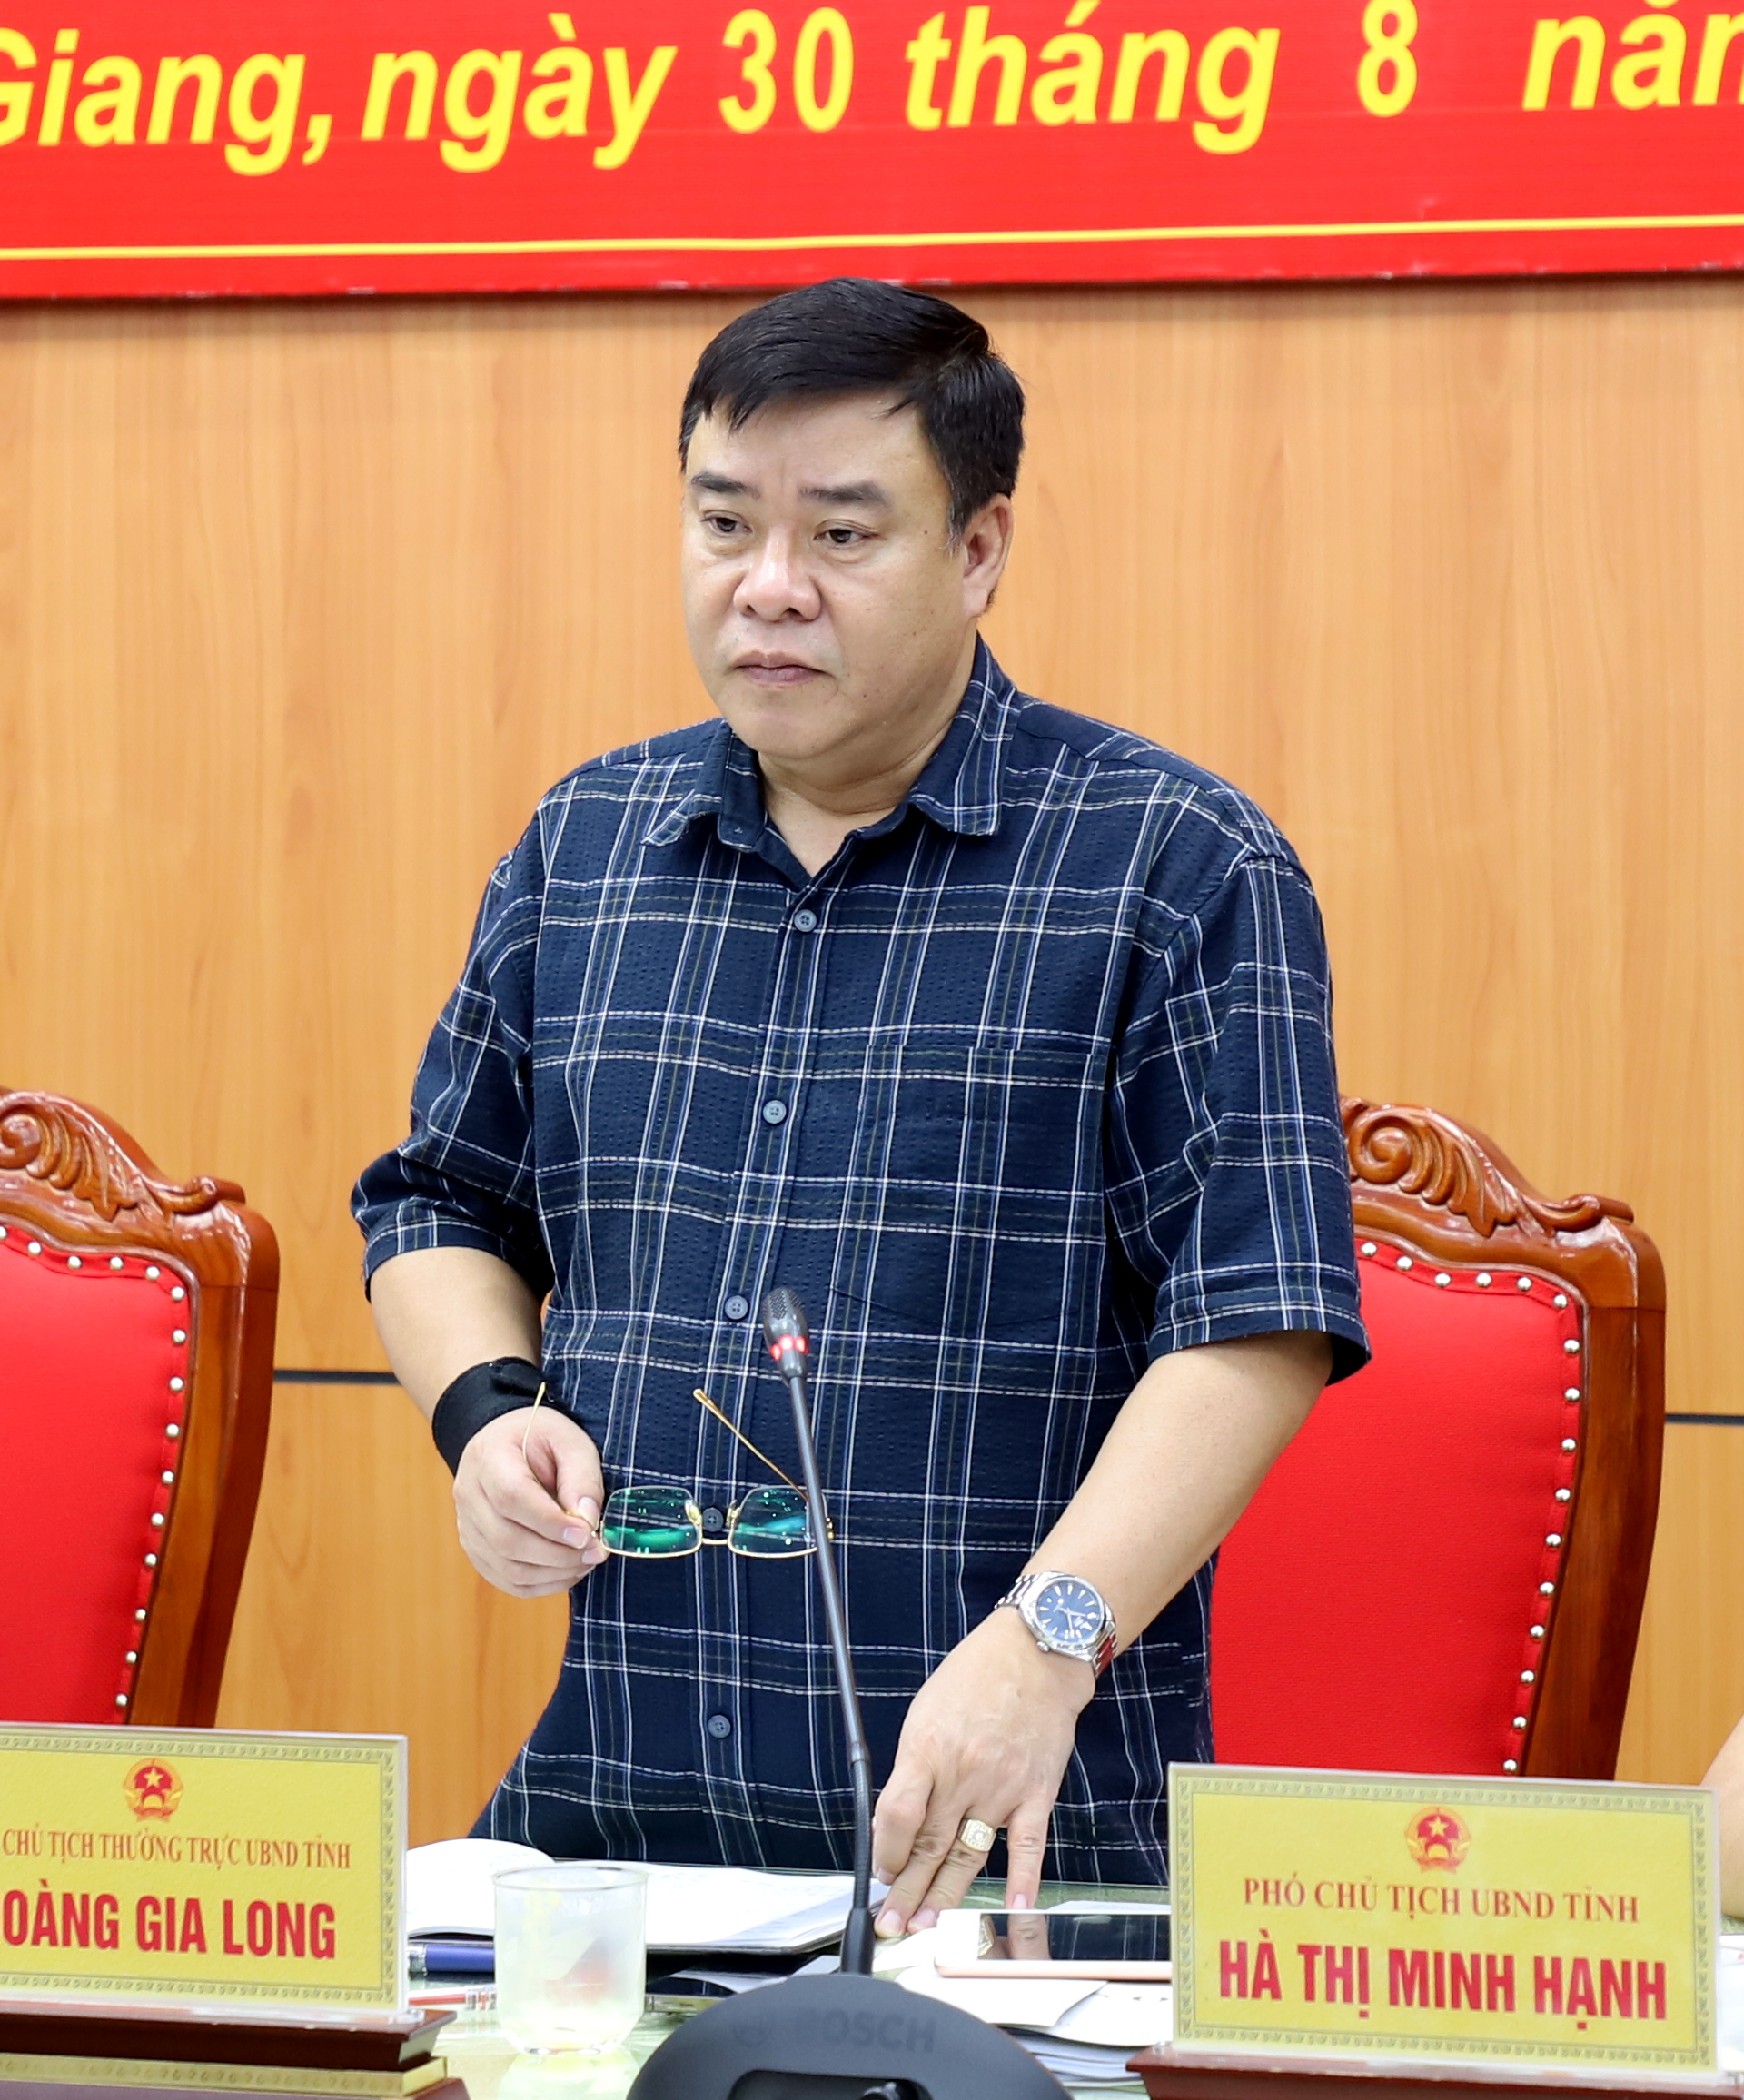 Phó Chủ tịch Thường trực UBND tỉnh Hoàng Gia Long đề nghị các ngành, địa phương triển khai đồng bộ, quyết liệt các giải pháp để thực hiện hiệu quả các nhiệm vụ phát triển KT - XH.